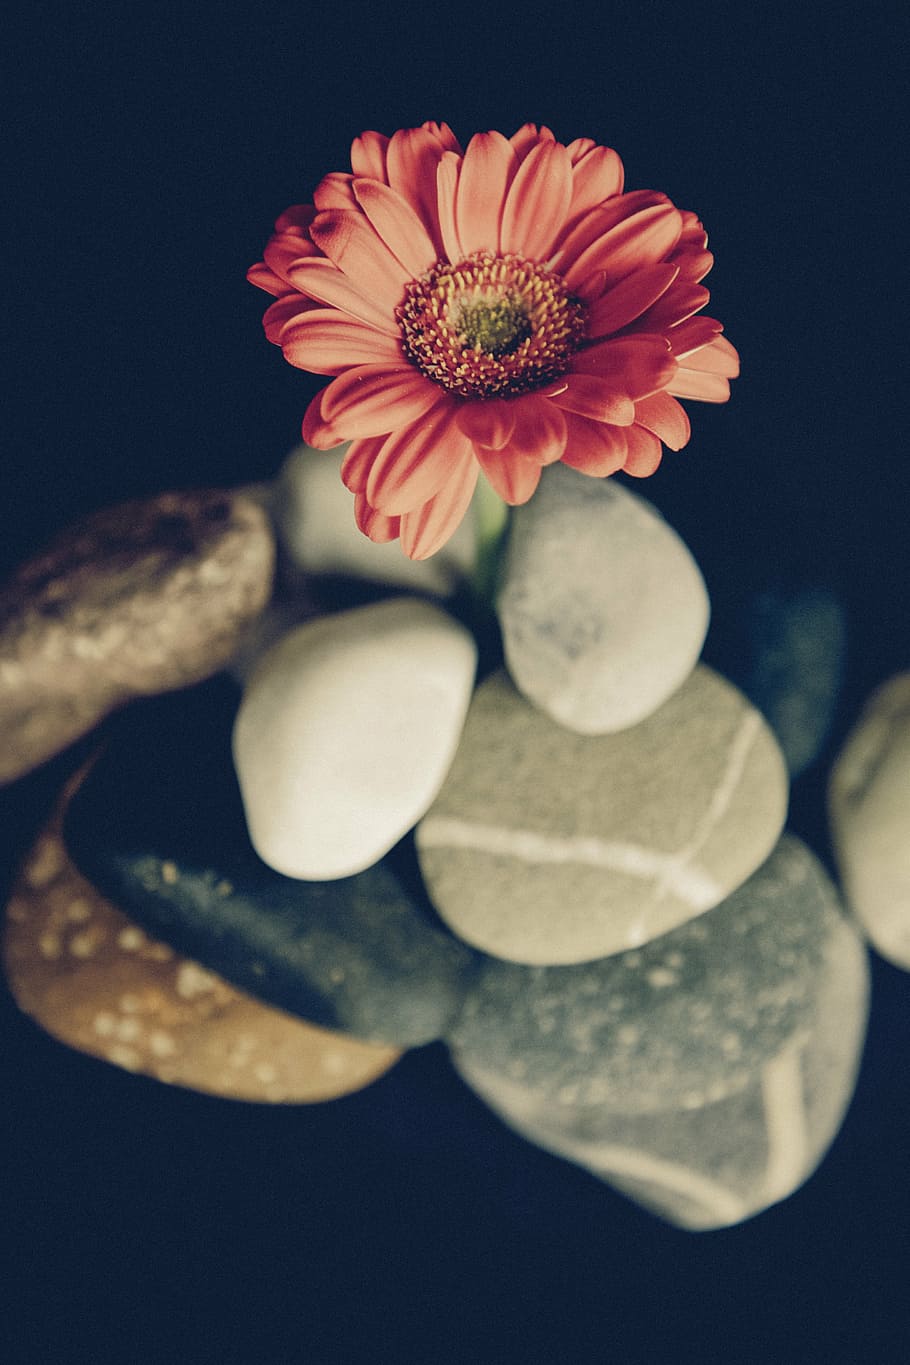 foto de primer plano, rosa, flor de la margarita de gerbera, amarillo, margarita, flor, pétalo, piedra, roca, oscuro